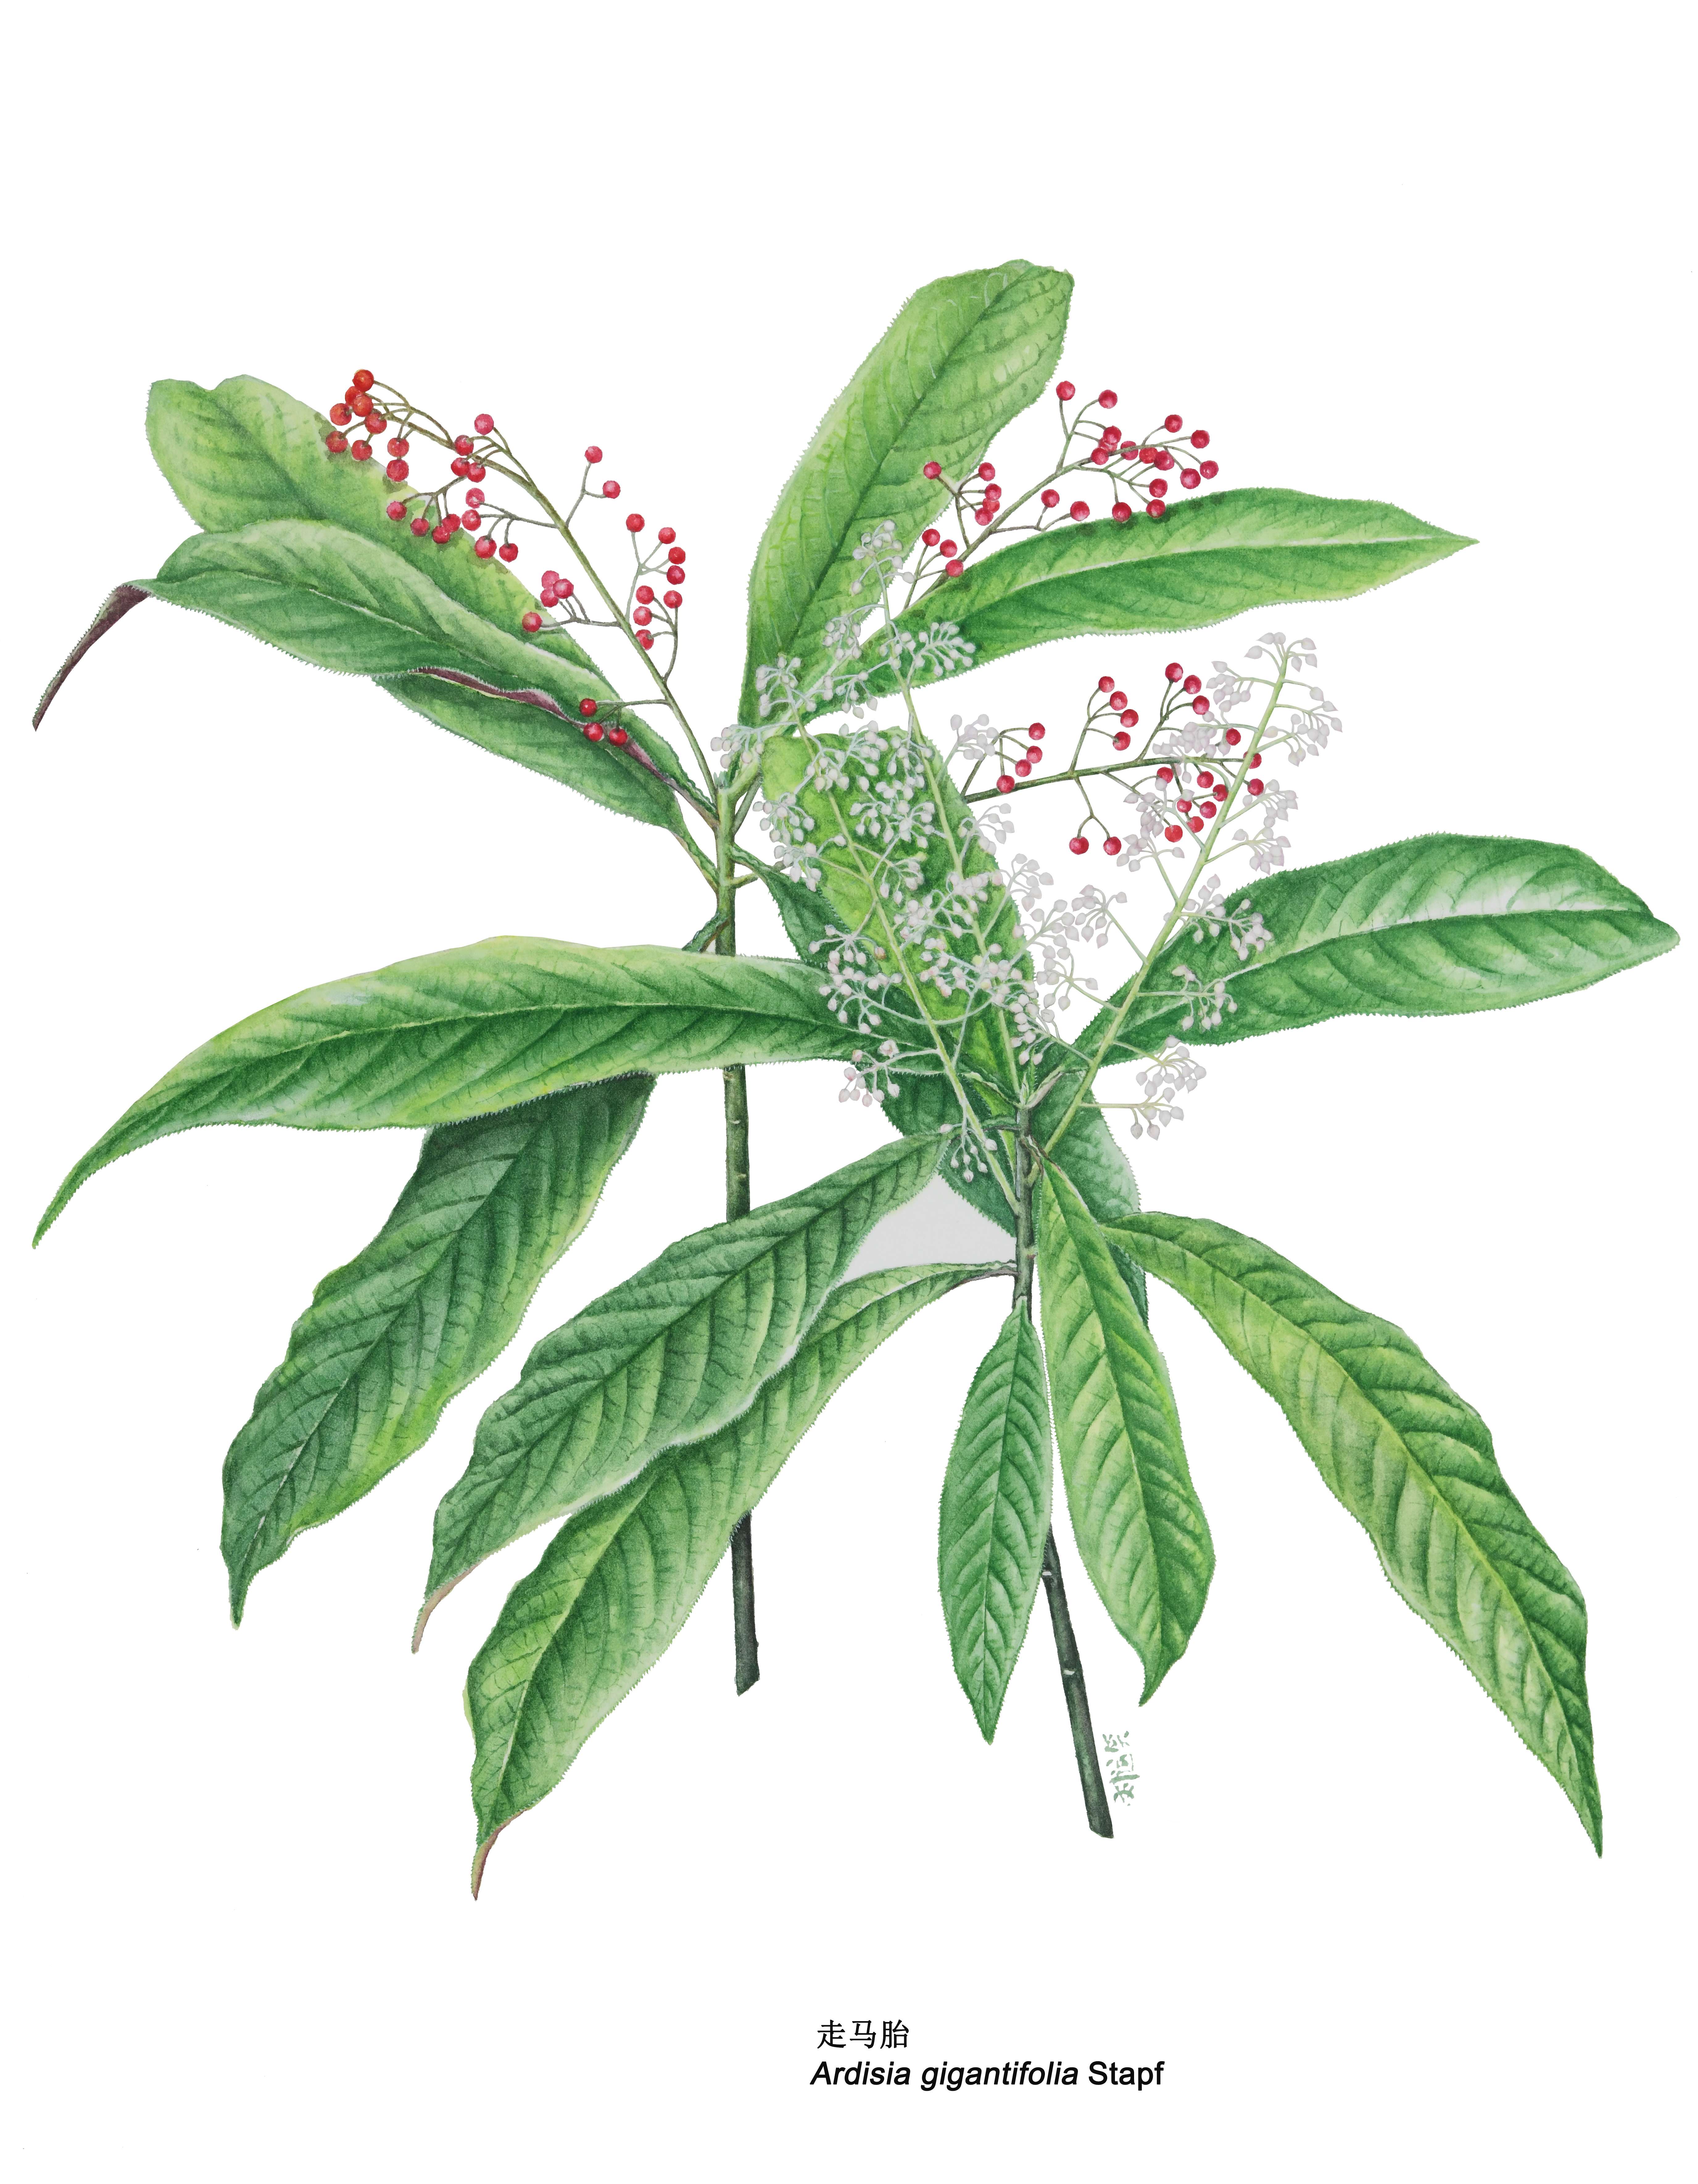 走馬胎（Ardisia gigantifolia Stapf），是報春花科紫金牛屬植物。分布於中國雲南、廣西、廣東、江西、福建等地，越南北部亦有栽培 。圖片來源：中國科學院華南植物園植物科學畫畫師劉運笑